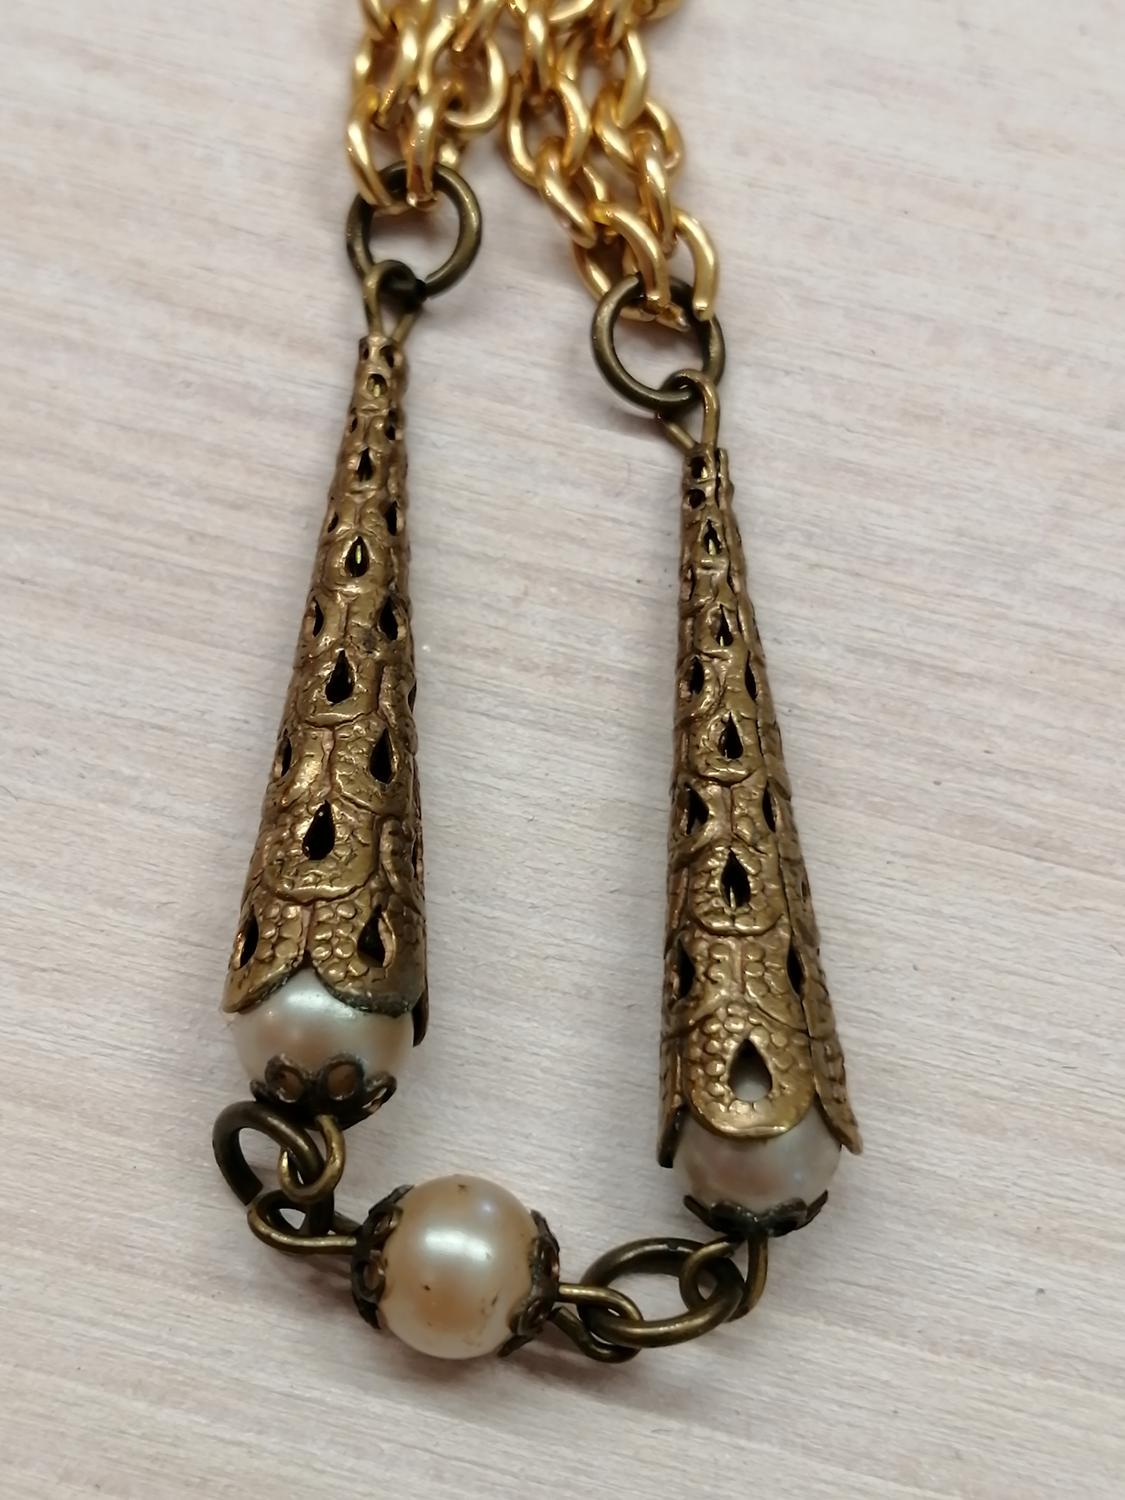 Vintage bijouteri långt halsband guldf och spetsiga koner silverf och pärlor